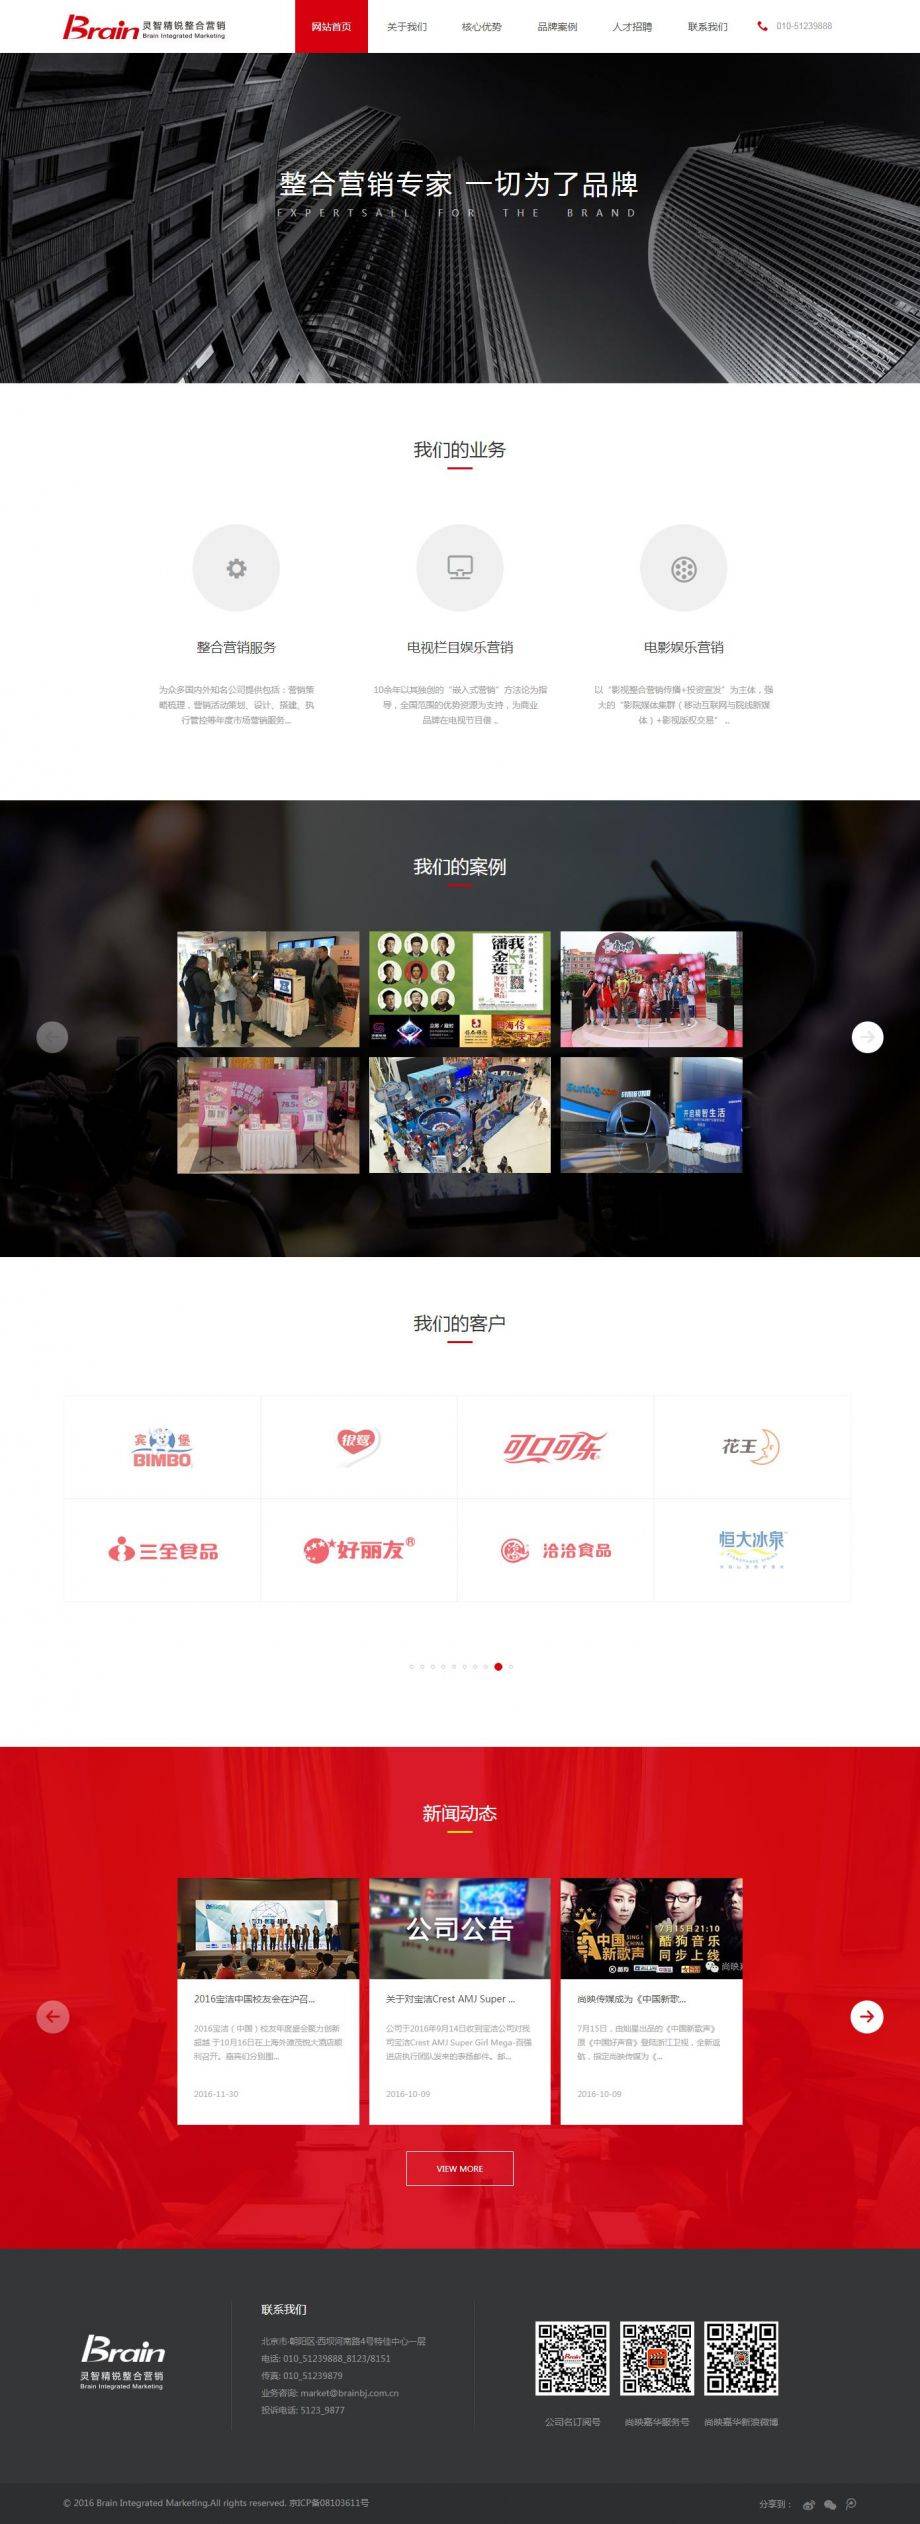 H5响应式中文版企业管理营销策划公司静态页面模板